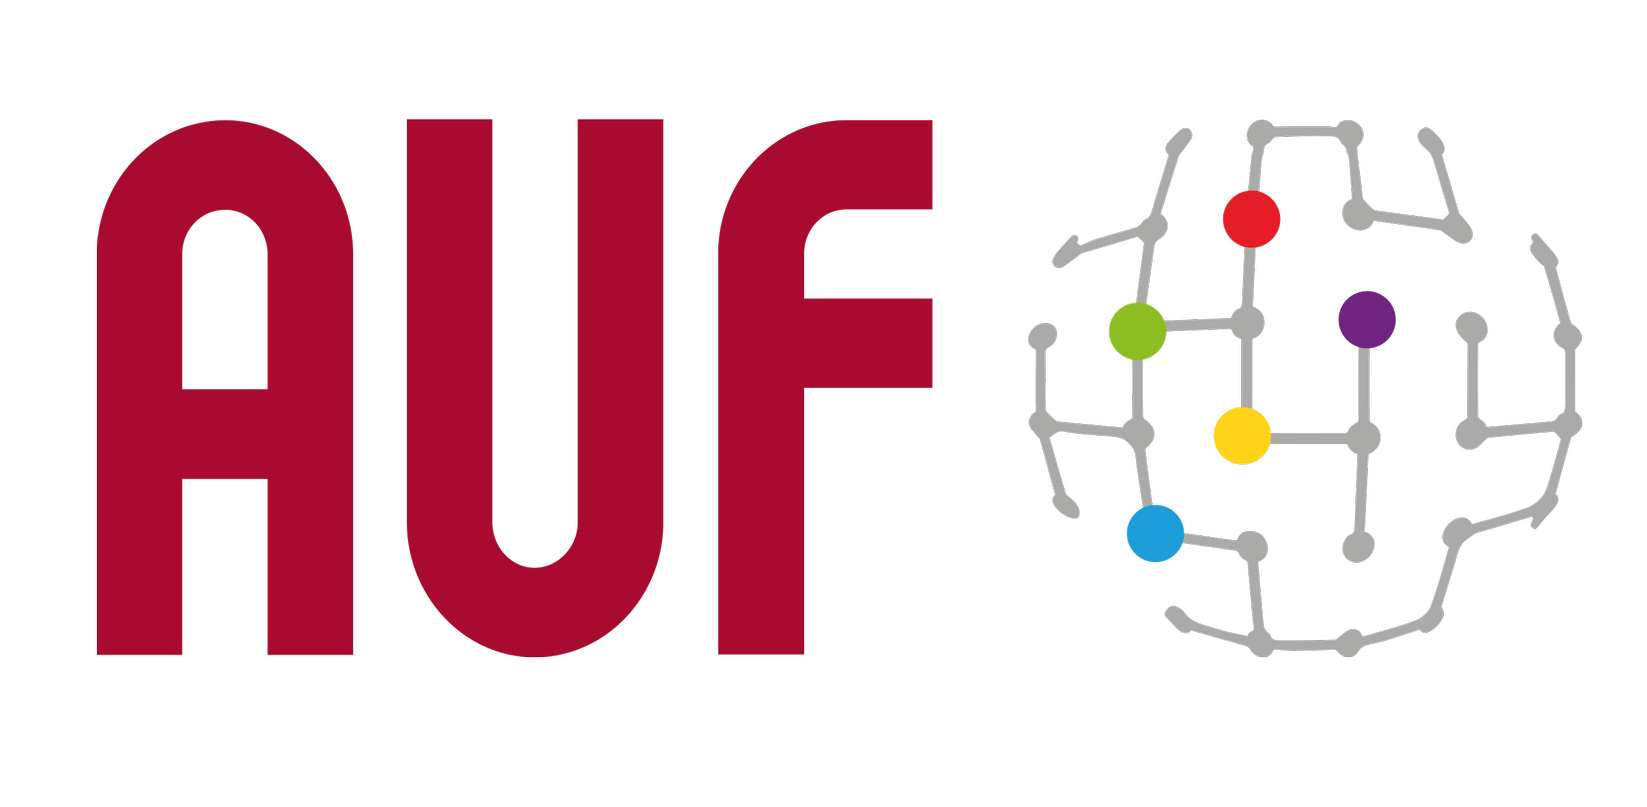 La Agence Universitaire de la Francophonie (AUF) recherche un Responsable de Campus numérique francophone (CNF), République du Congo